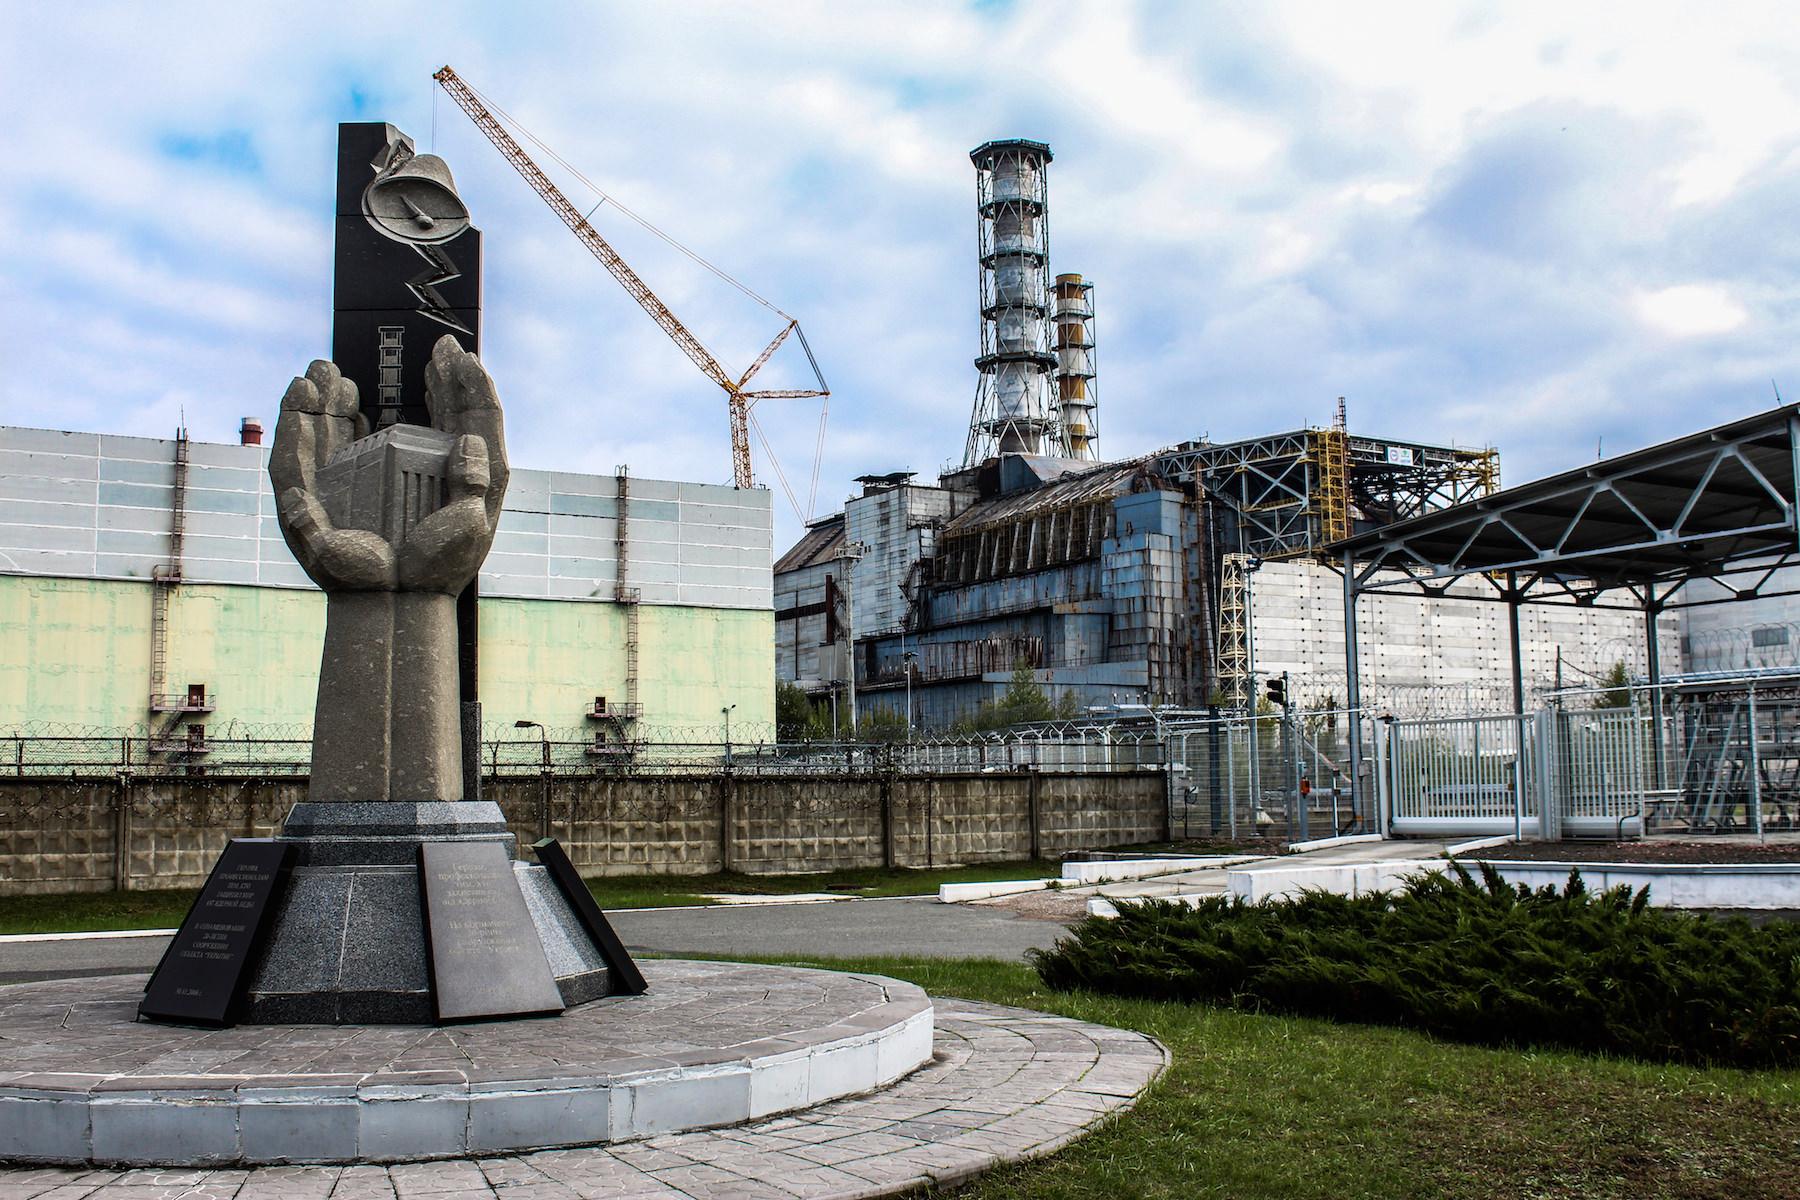 Http chernobyl. Чернобыльская АЭС город. Припять Чернобыль ЧАЭС. Атомная станция Чернобыль сейчас. Чернобыльская атомная электростанция в городе Припяти.